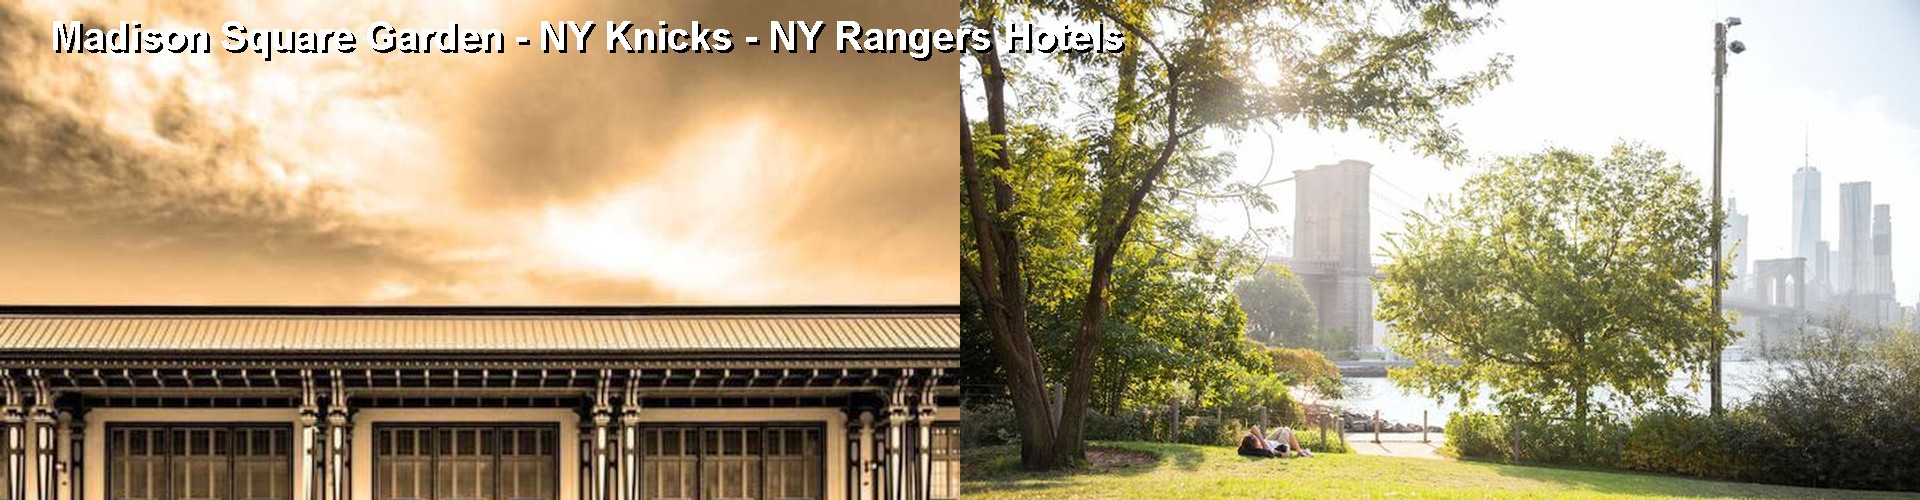 5 Best Hotels near Madison Square Garden - NY Knicks - NY Rangers